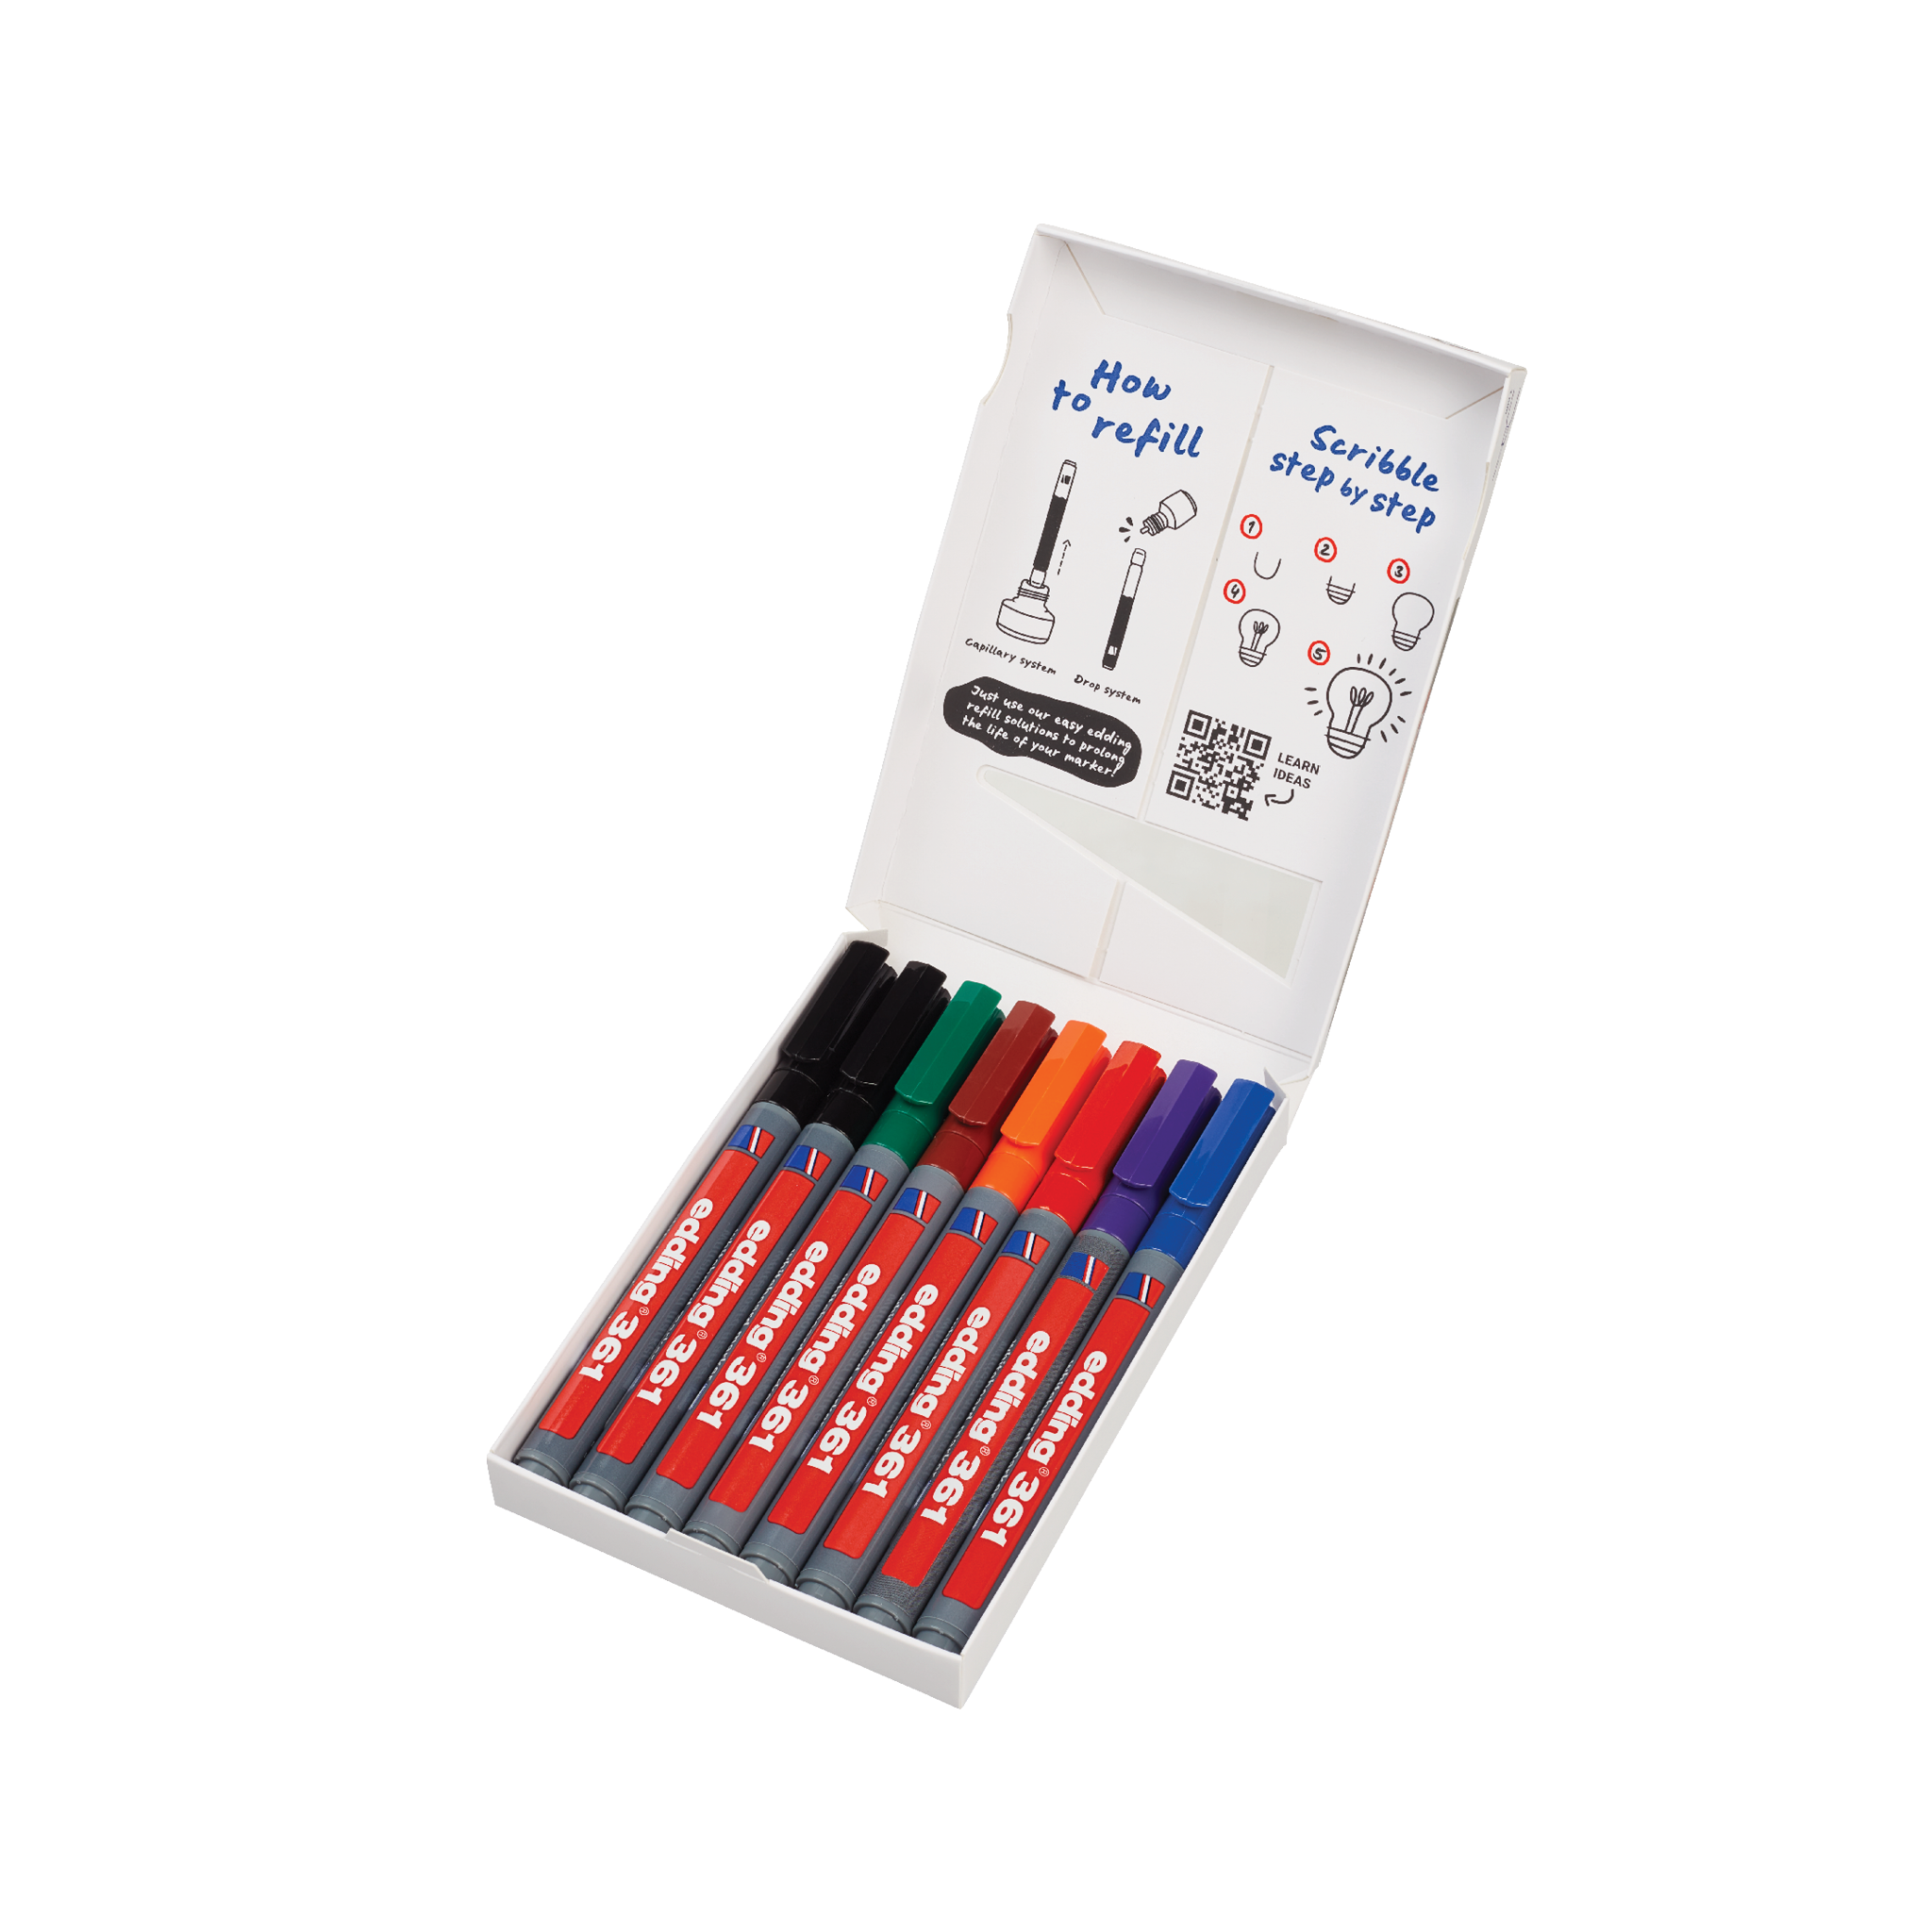 8er-Pack edding 361 Whiteboardmarker in verschiedenen Farben mit trocken abwischbarer und nachfüllbarer Tinte.